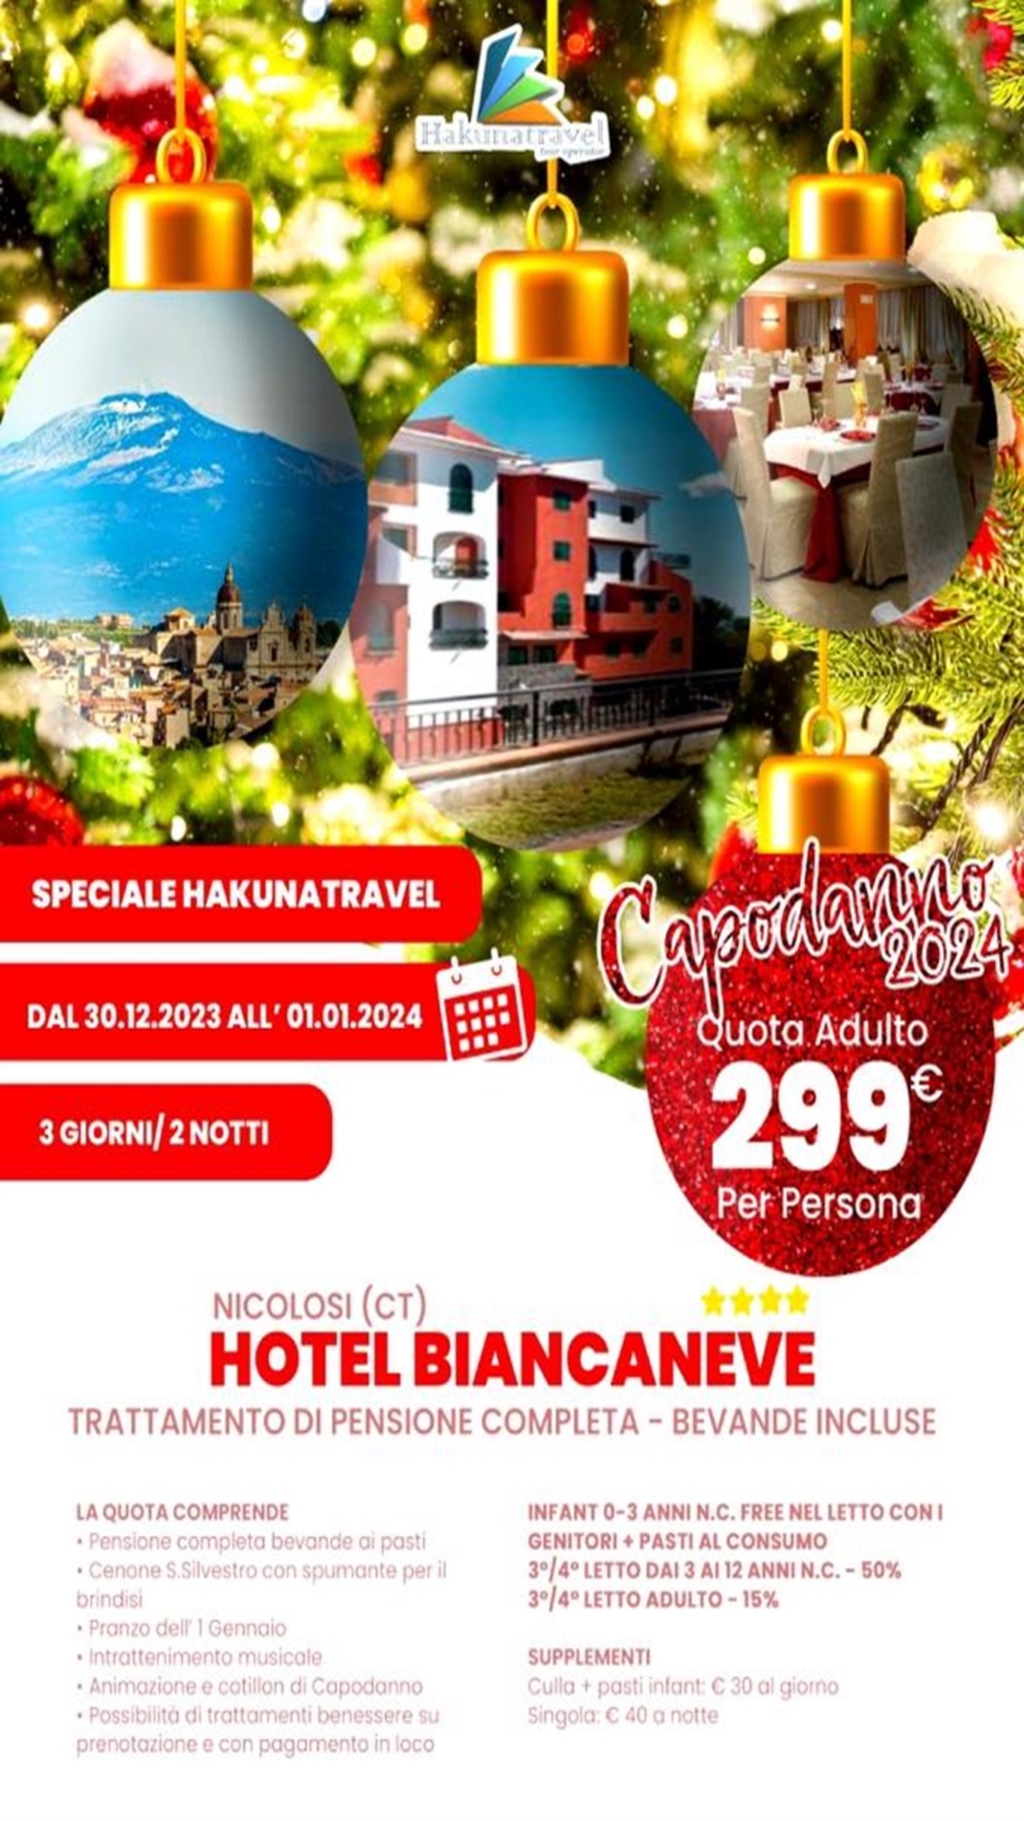 HOTEL BIANCANEVE